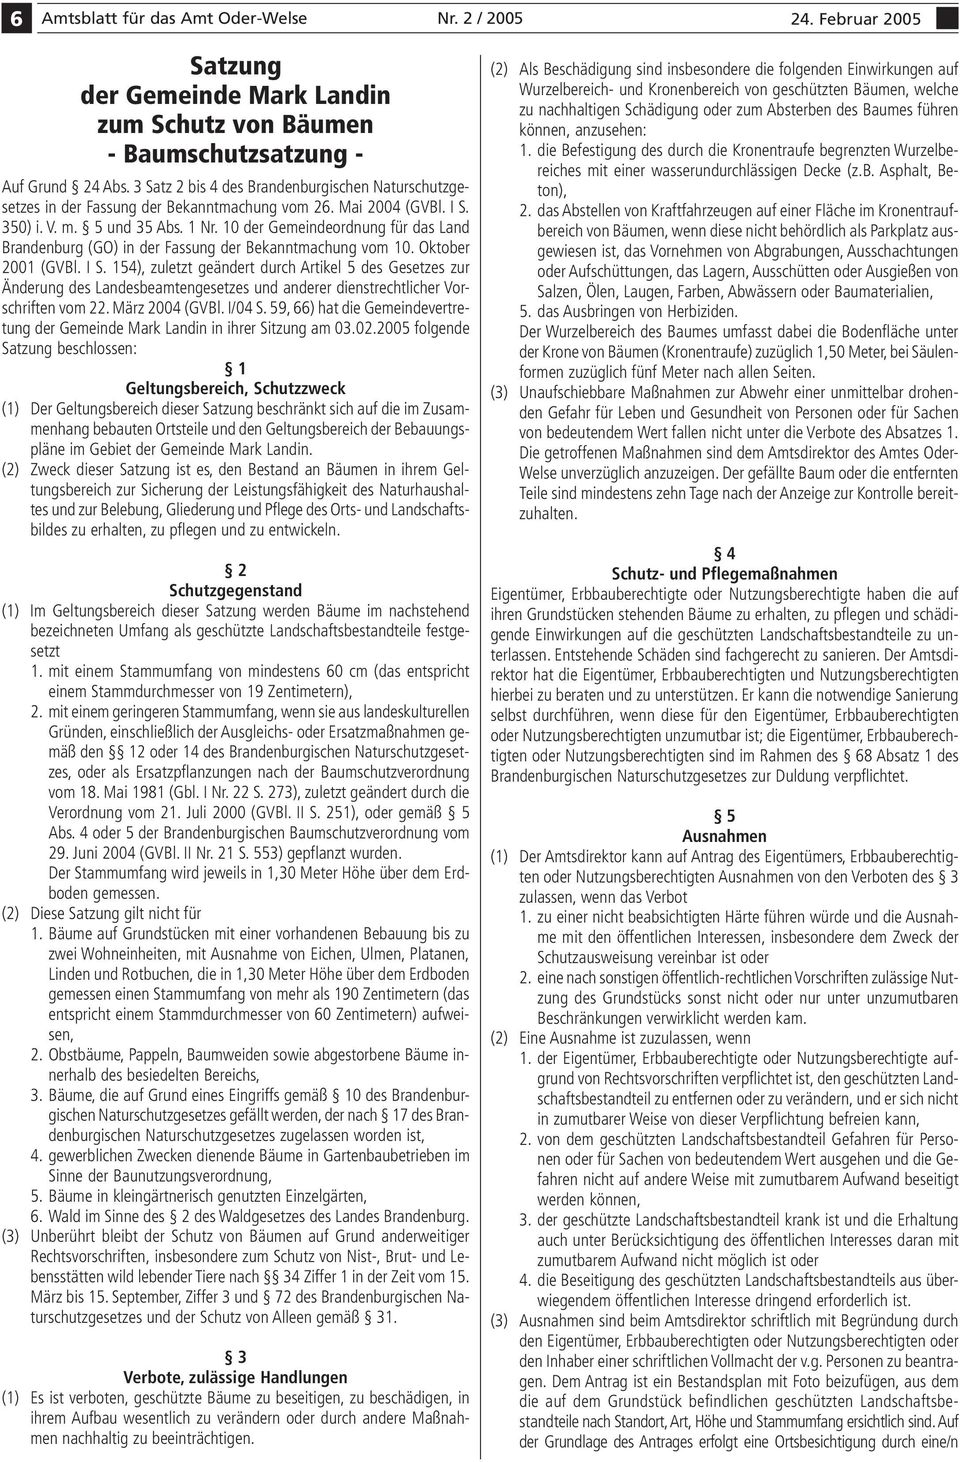 10 der Gemeindeordnung für das Land Brandenburg (GO) in der Fassung der Bekanntmachung vom 10. Oktober 2001 (GVBl. I S.